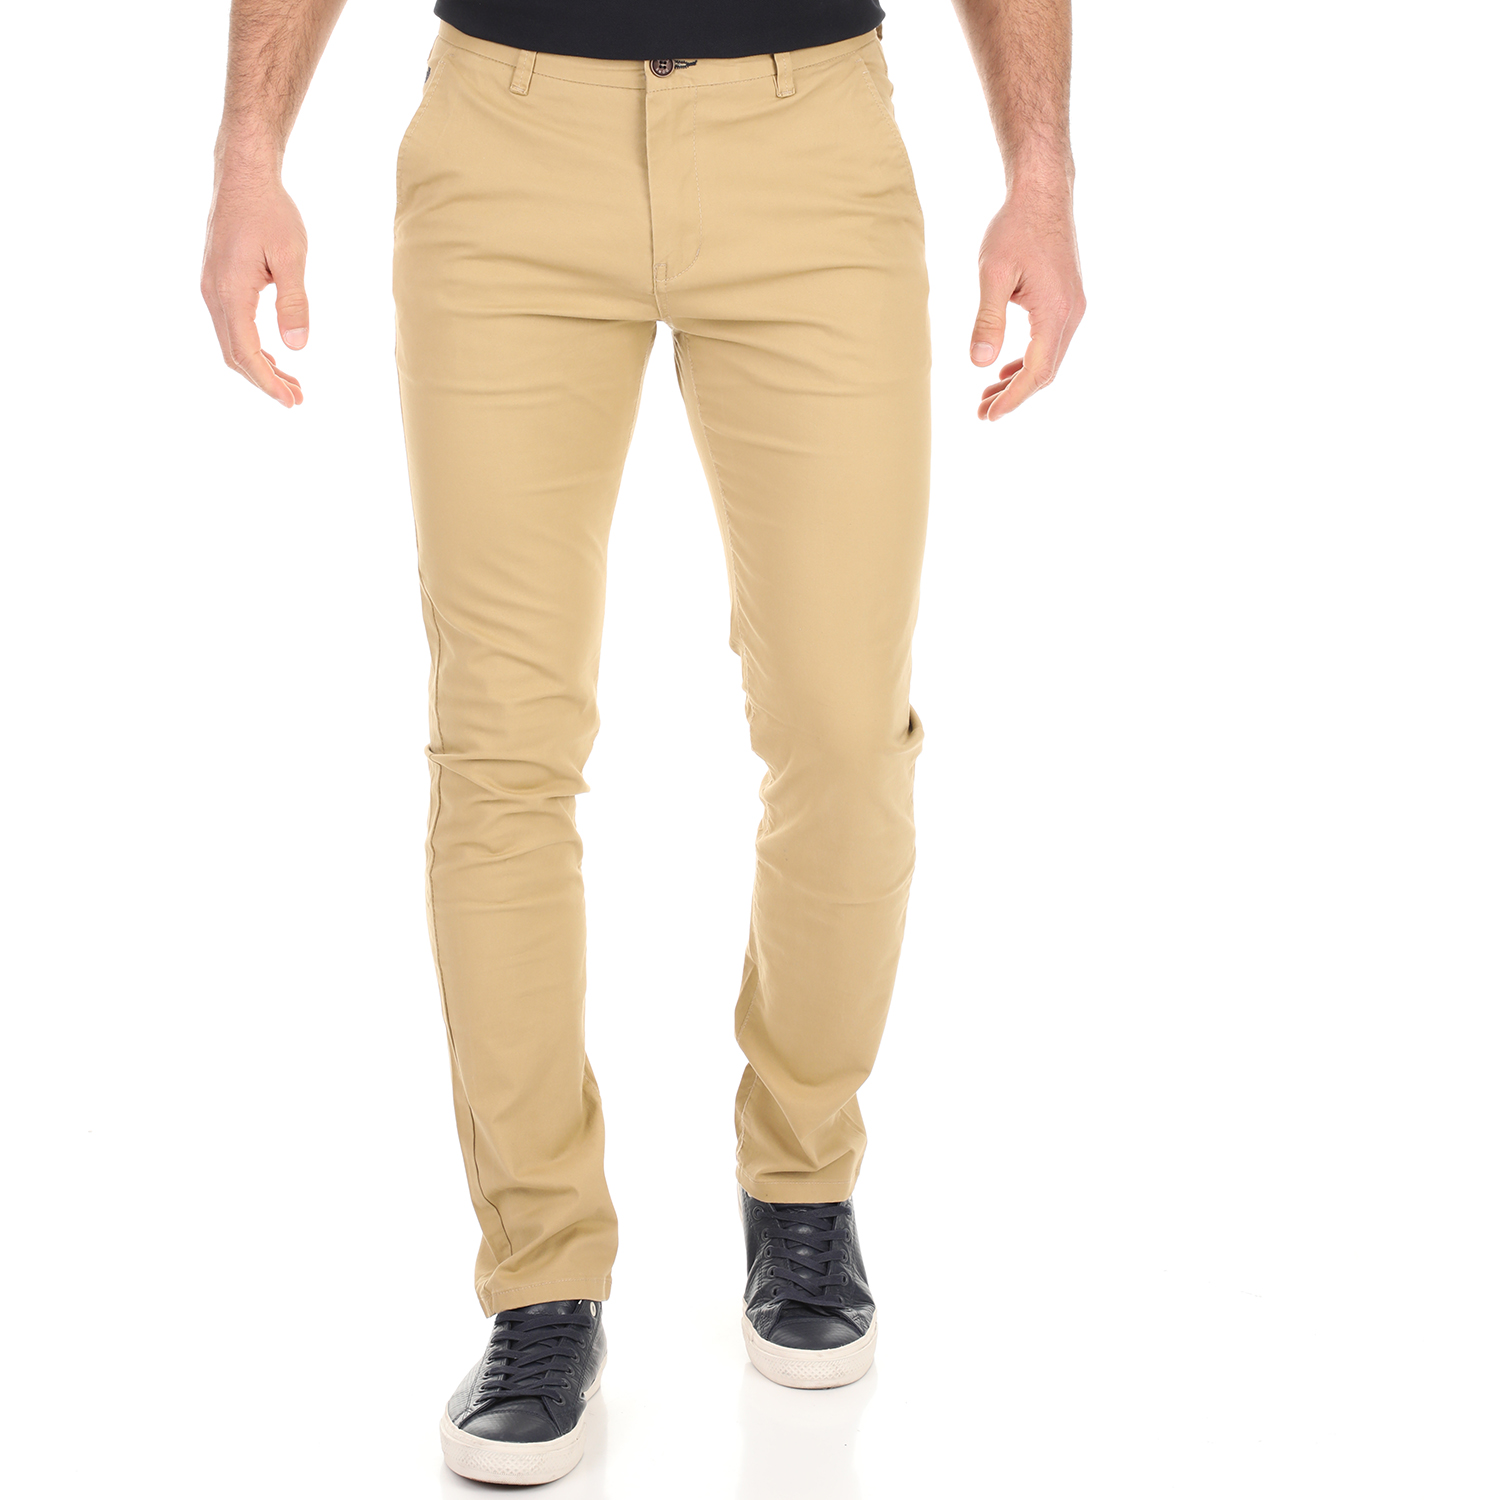 Ανδρικά/Ρούχα/Παντελόνια/Chinos DORS - Ανδρικό παντελόνι DORS μπεζ